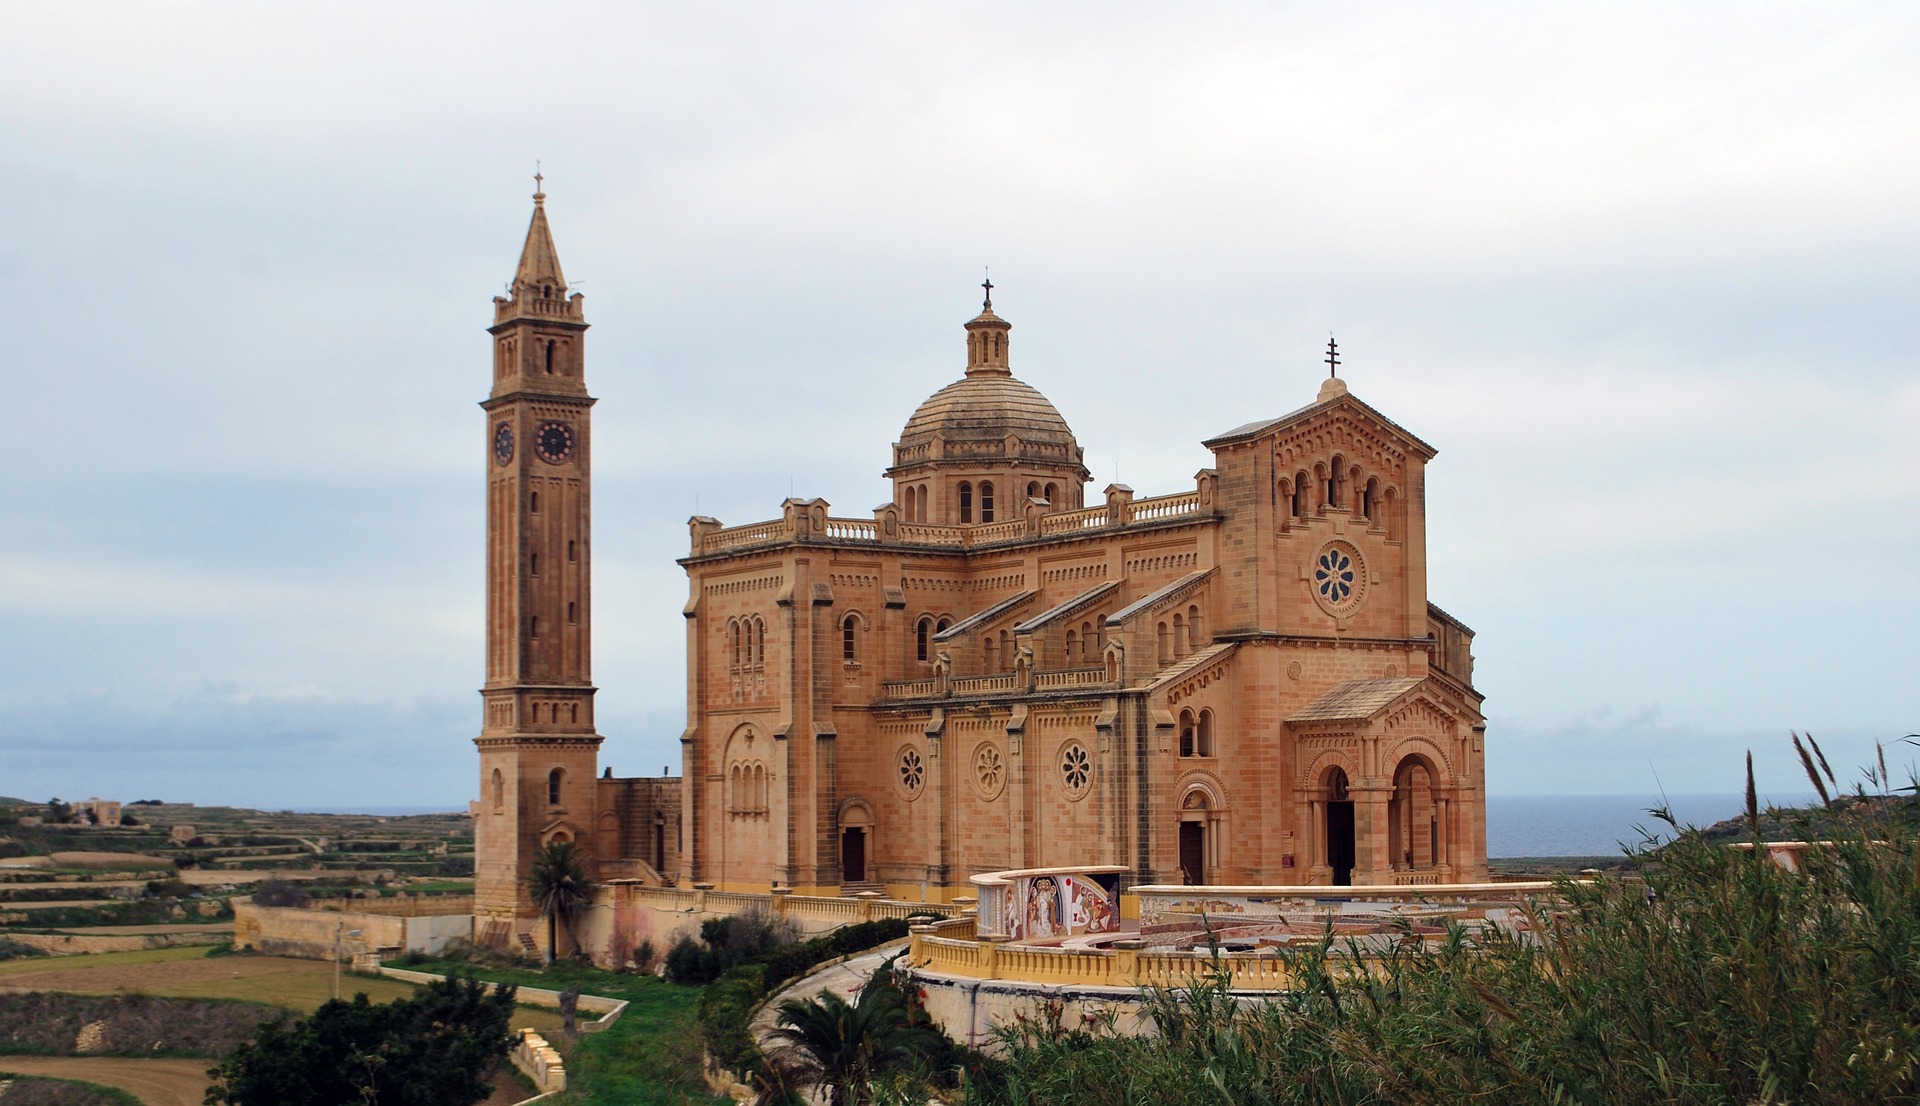 Urlaub auf Malta günstig buchen ab 111,00€ - chill in St. Paul's